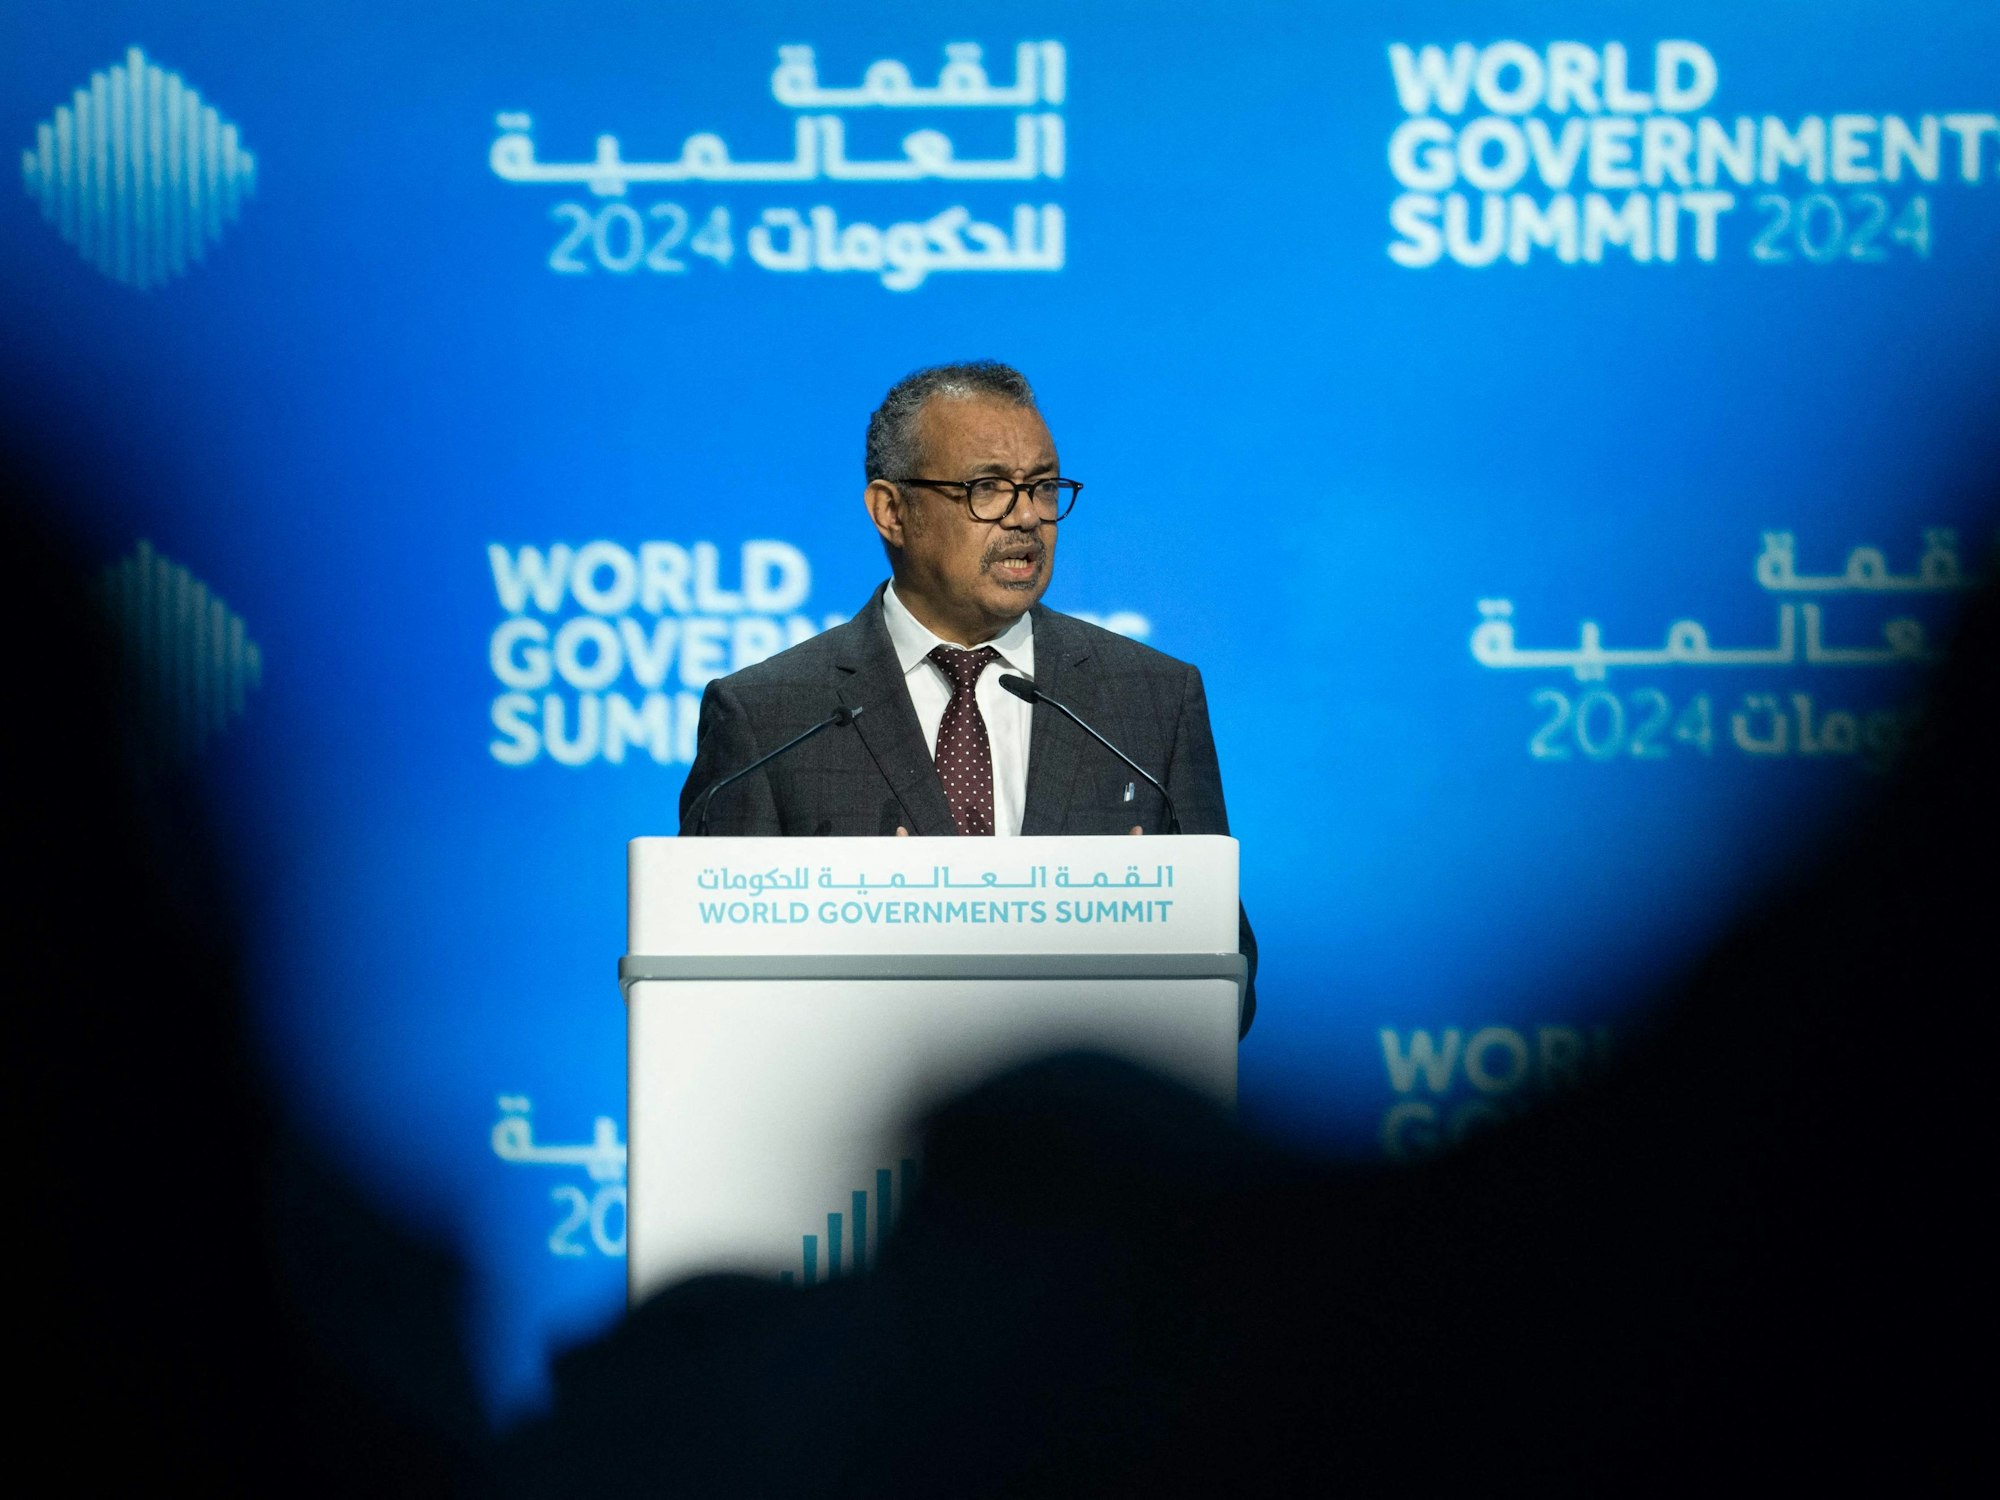 Der Chef der WHO, Tedros Adhanom Ghebreyesus, auf dem World Governments Summit 2024 in Dubai am 12. Februar.